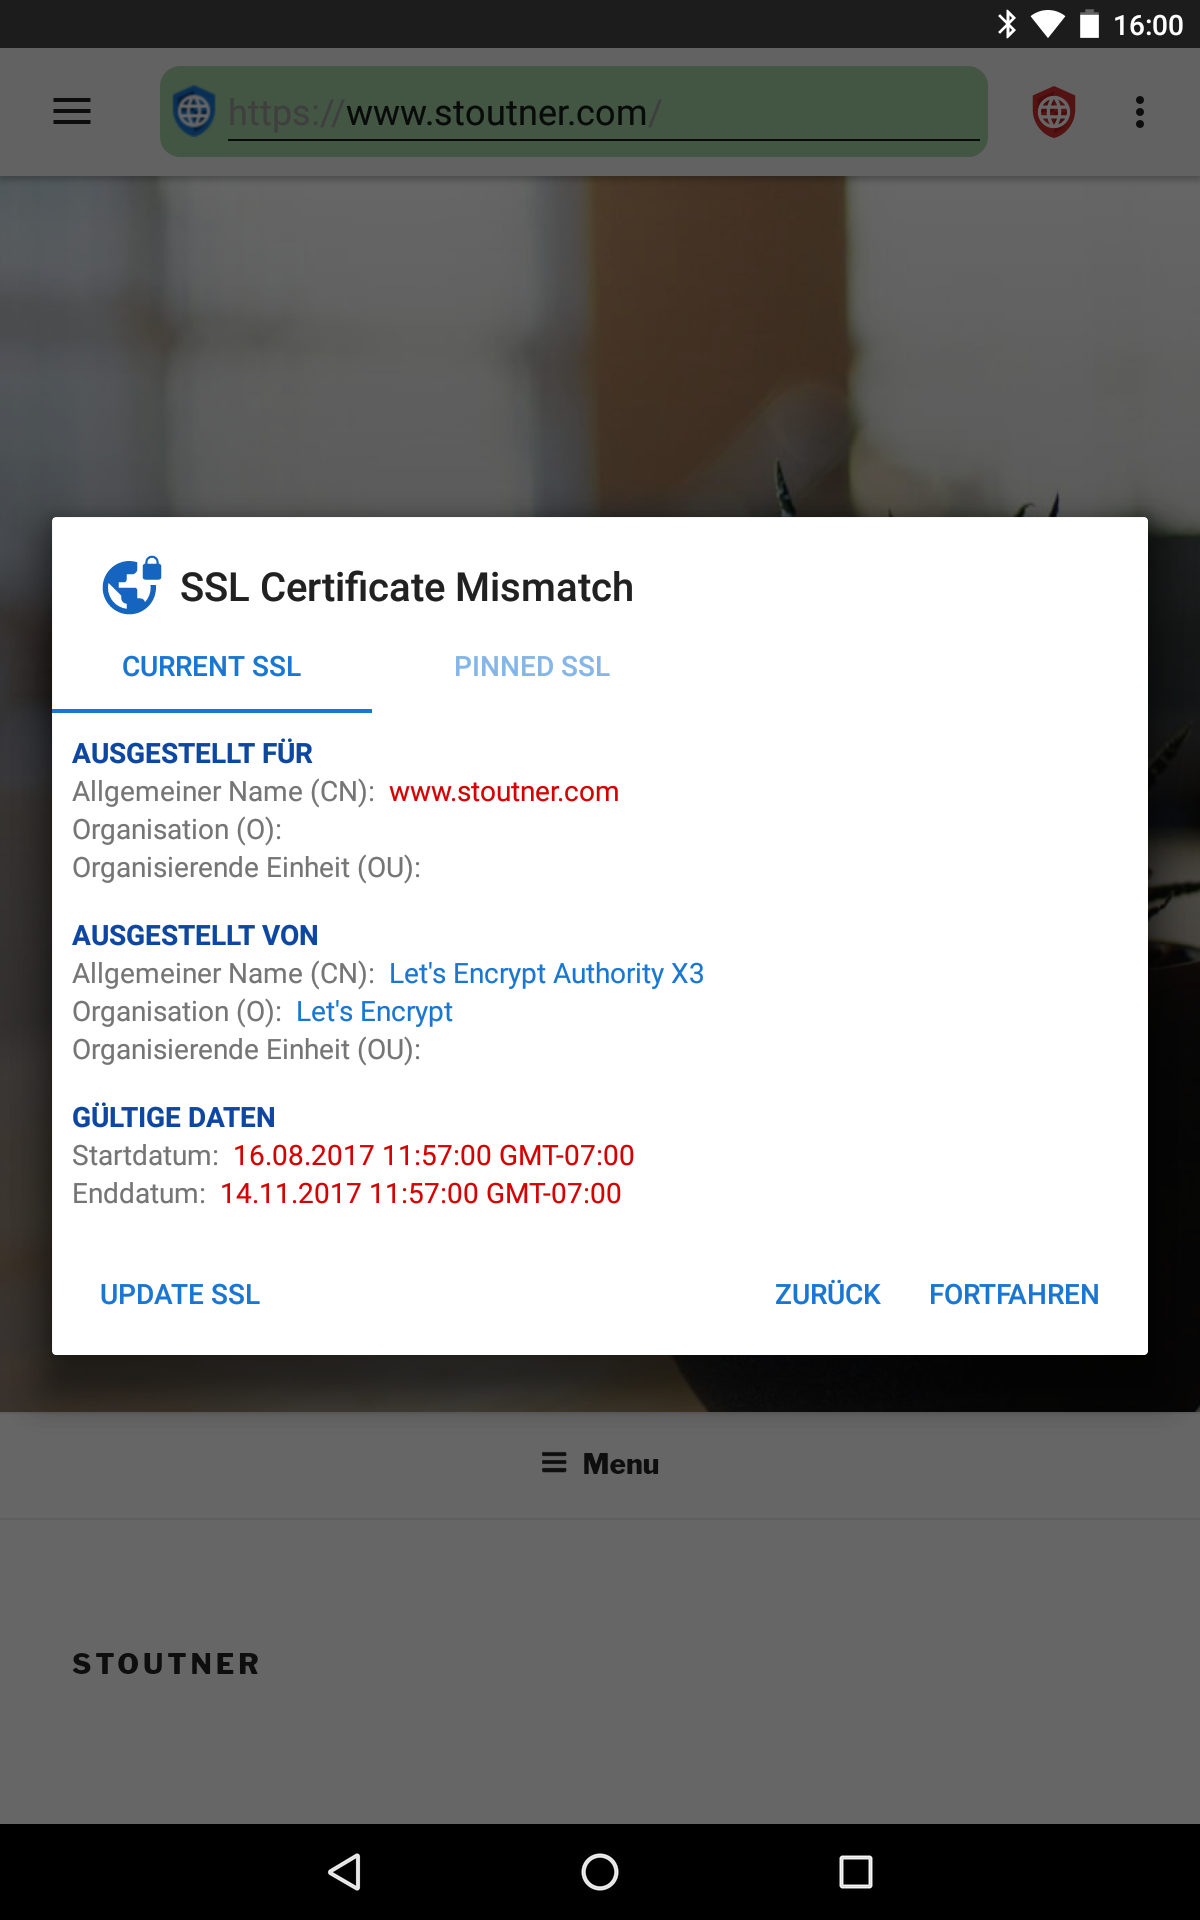 02 - SSL Certificate Mismatch - de.png